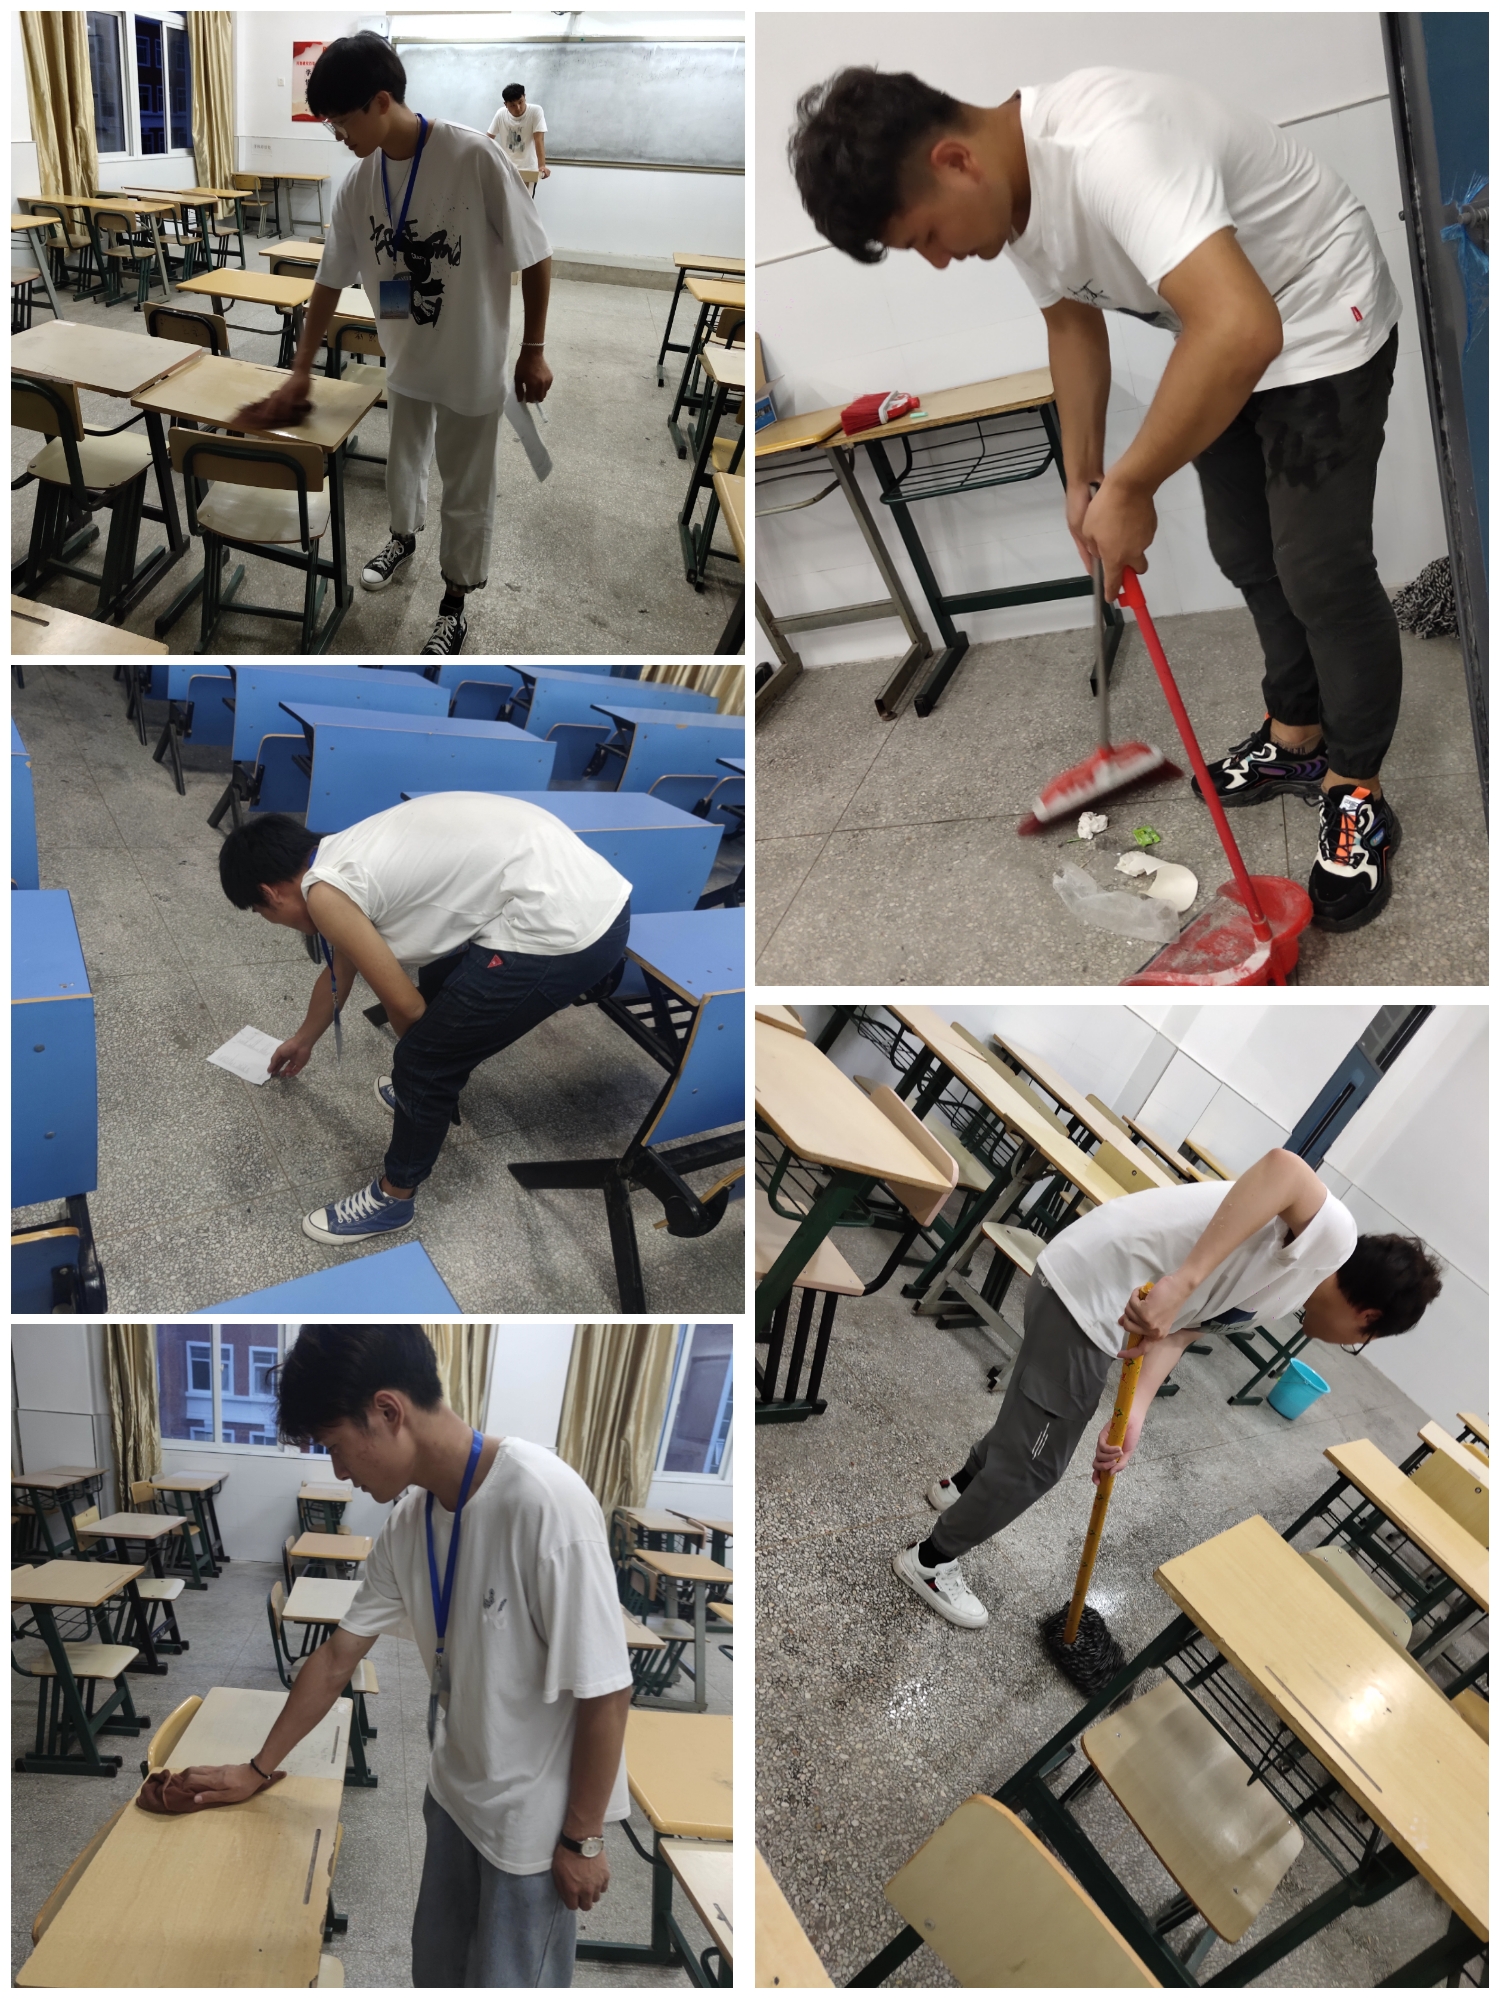 荣成市第三十五中学上百名教师同学和部分学生家长参加新校区卫生打扫工作-搜狐大视野-搜狐新闻